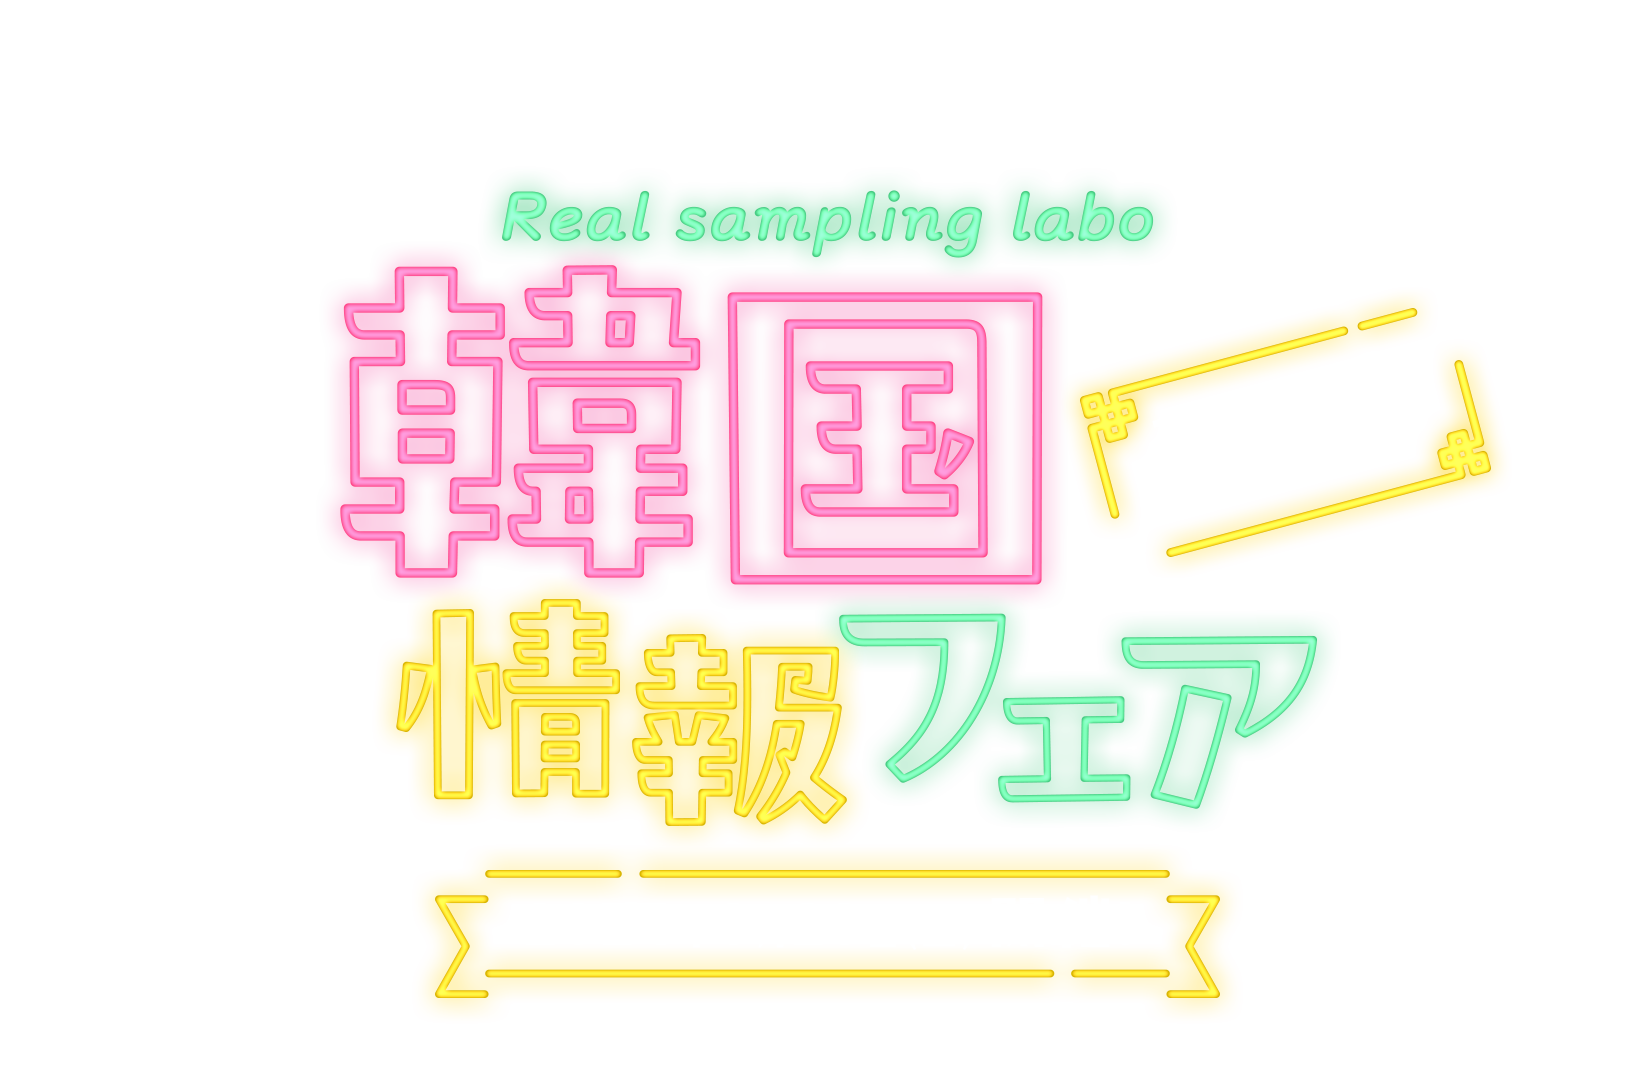 Real sampling labo 韓国情報フェア